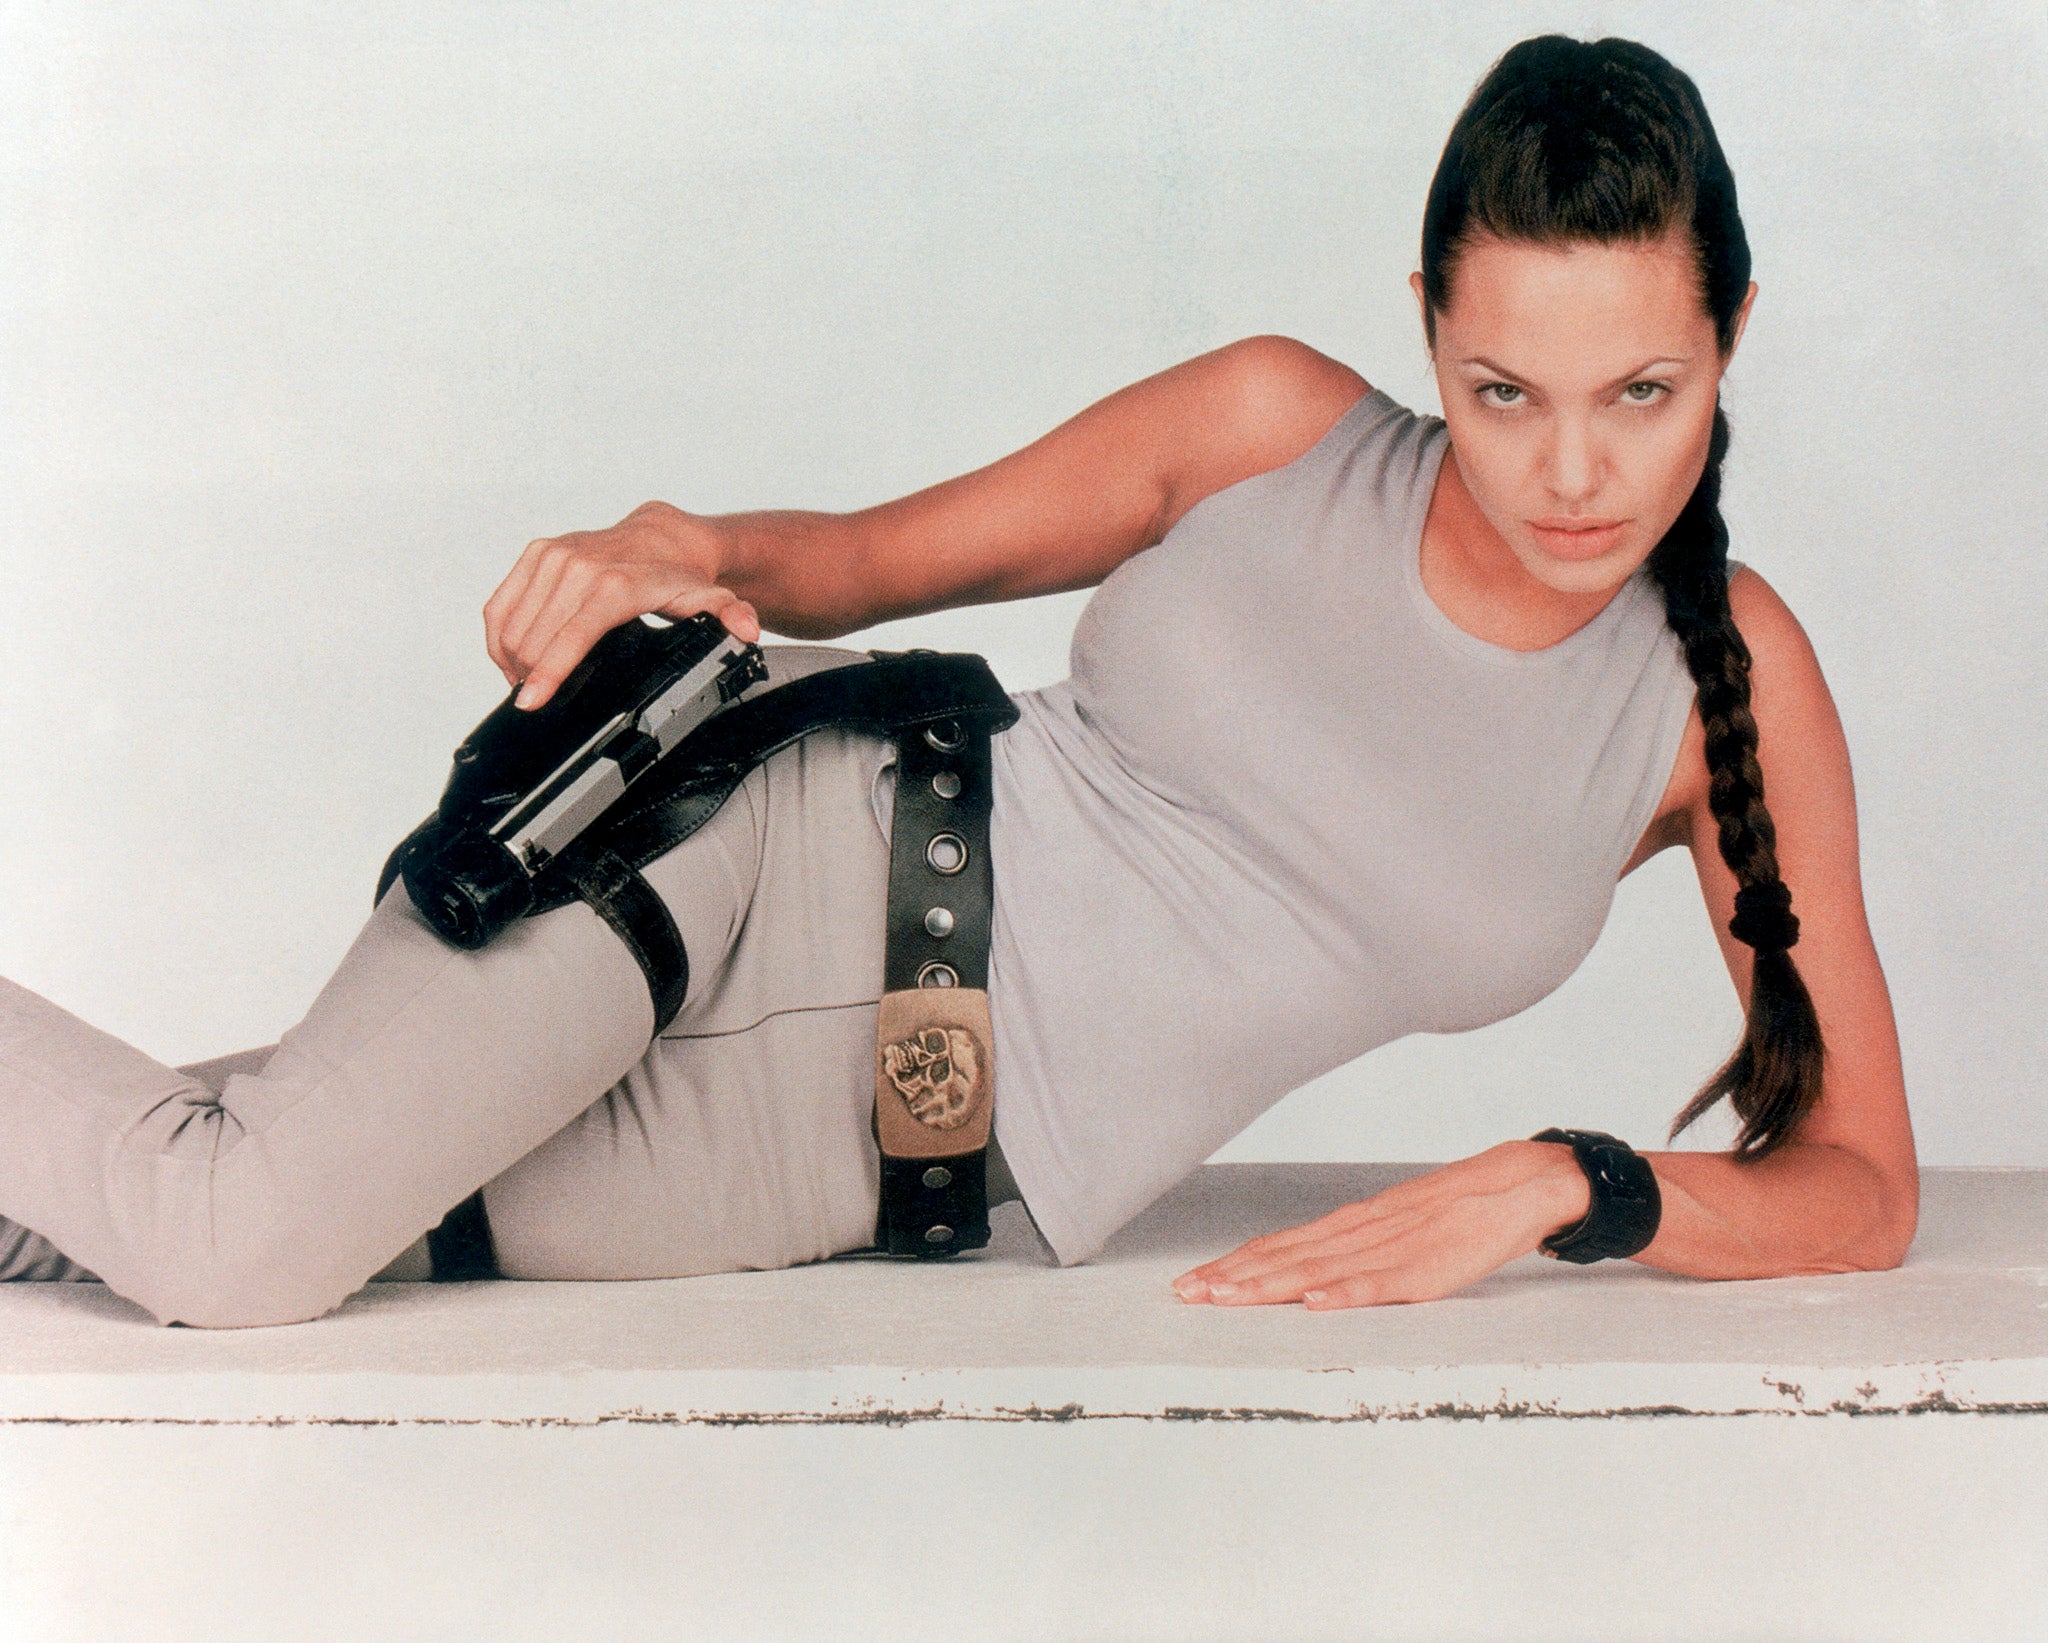 Lara Croft stars in the 2001 film Lara Croft: Tomb Raider